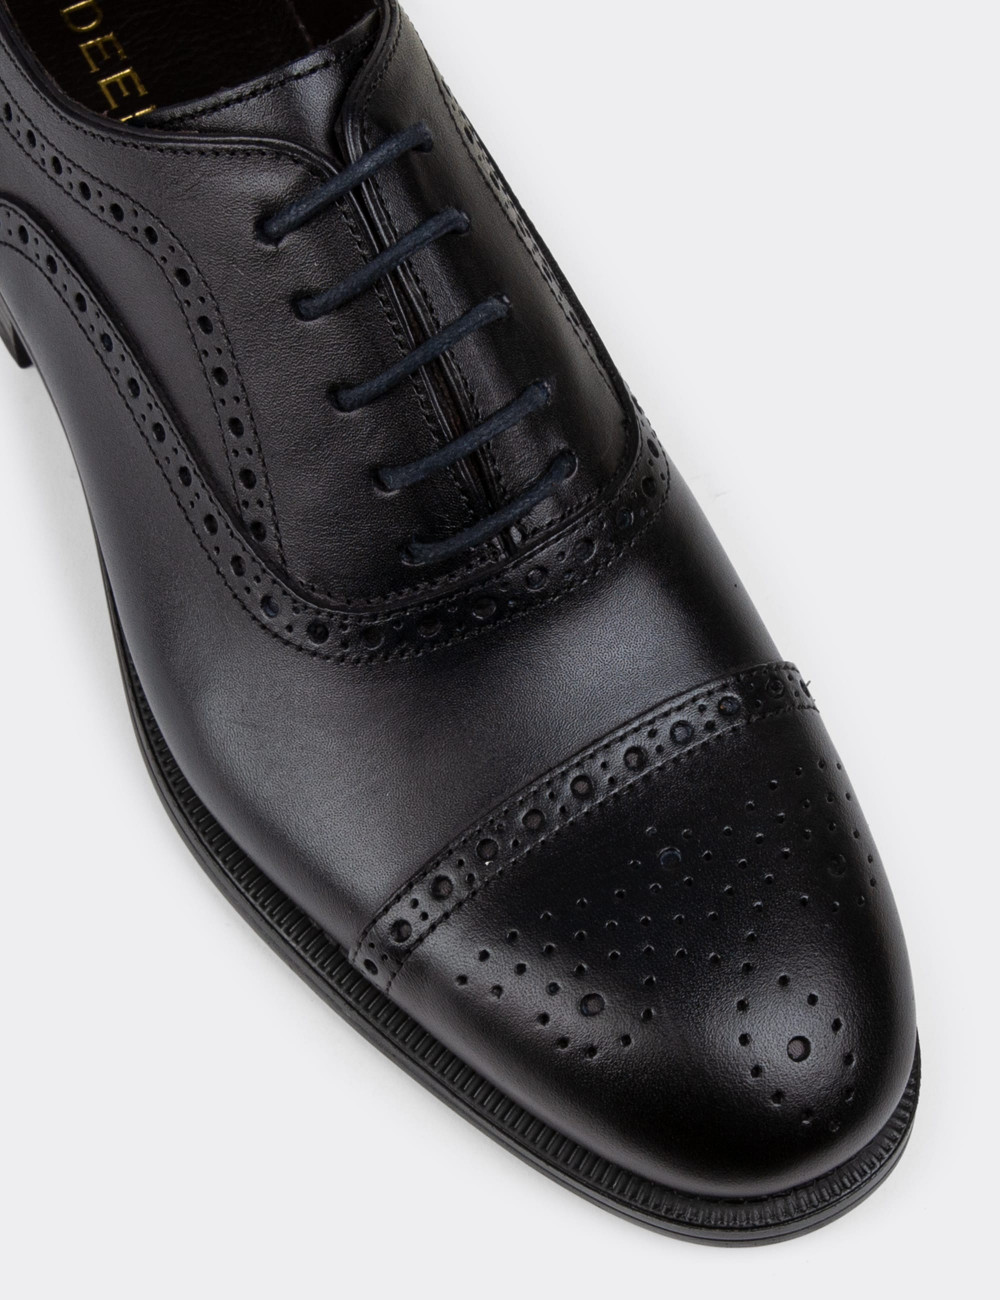 Hakiki Deri Lacivert Klasik Erkek Ayakkabı - 01813MLCVC01